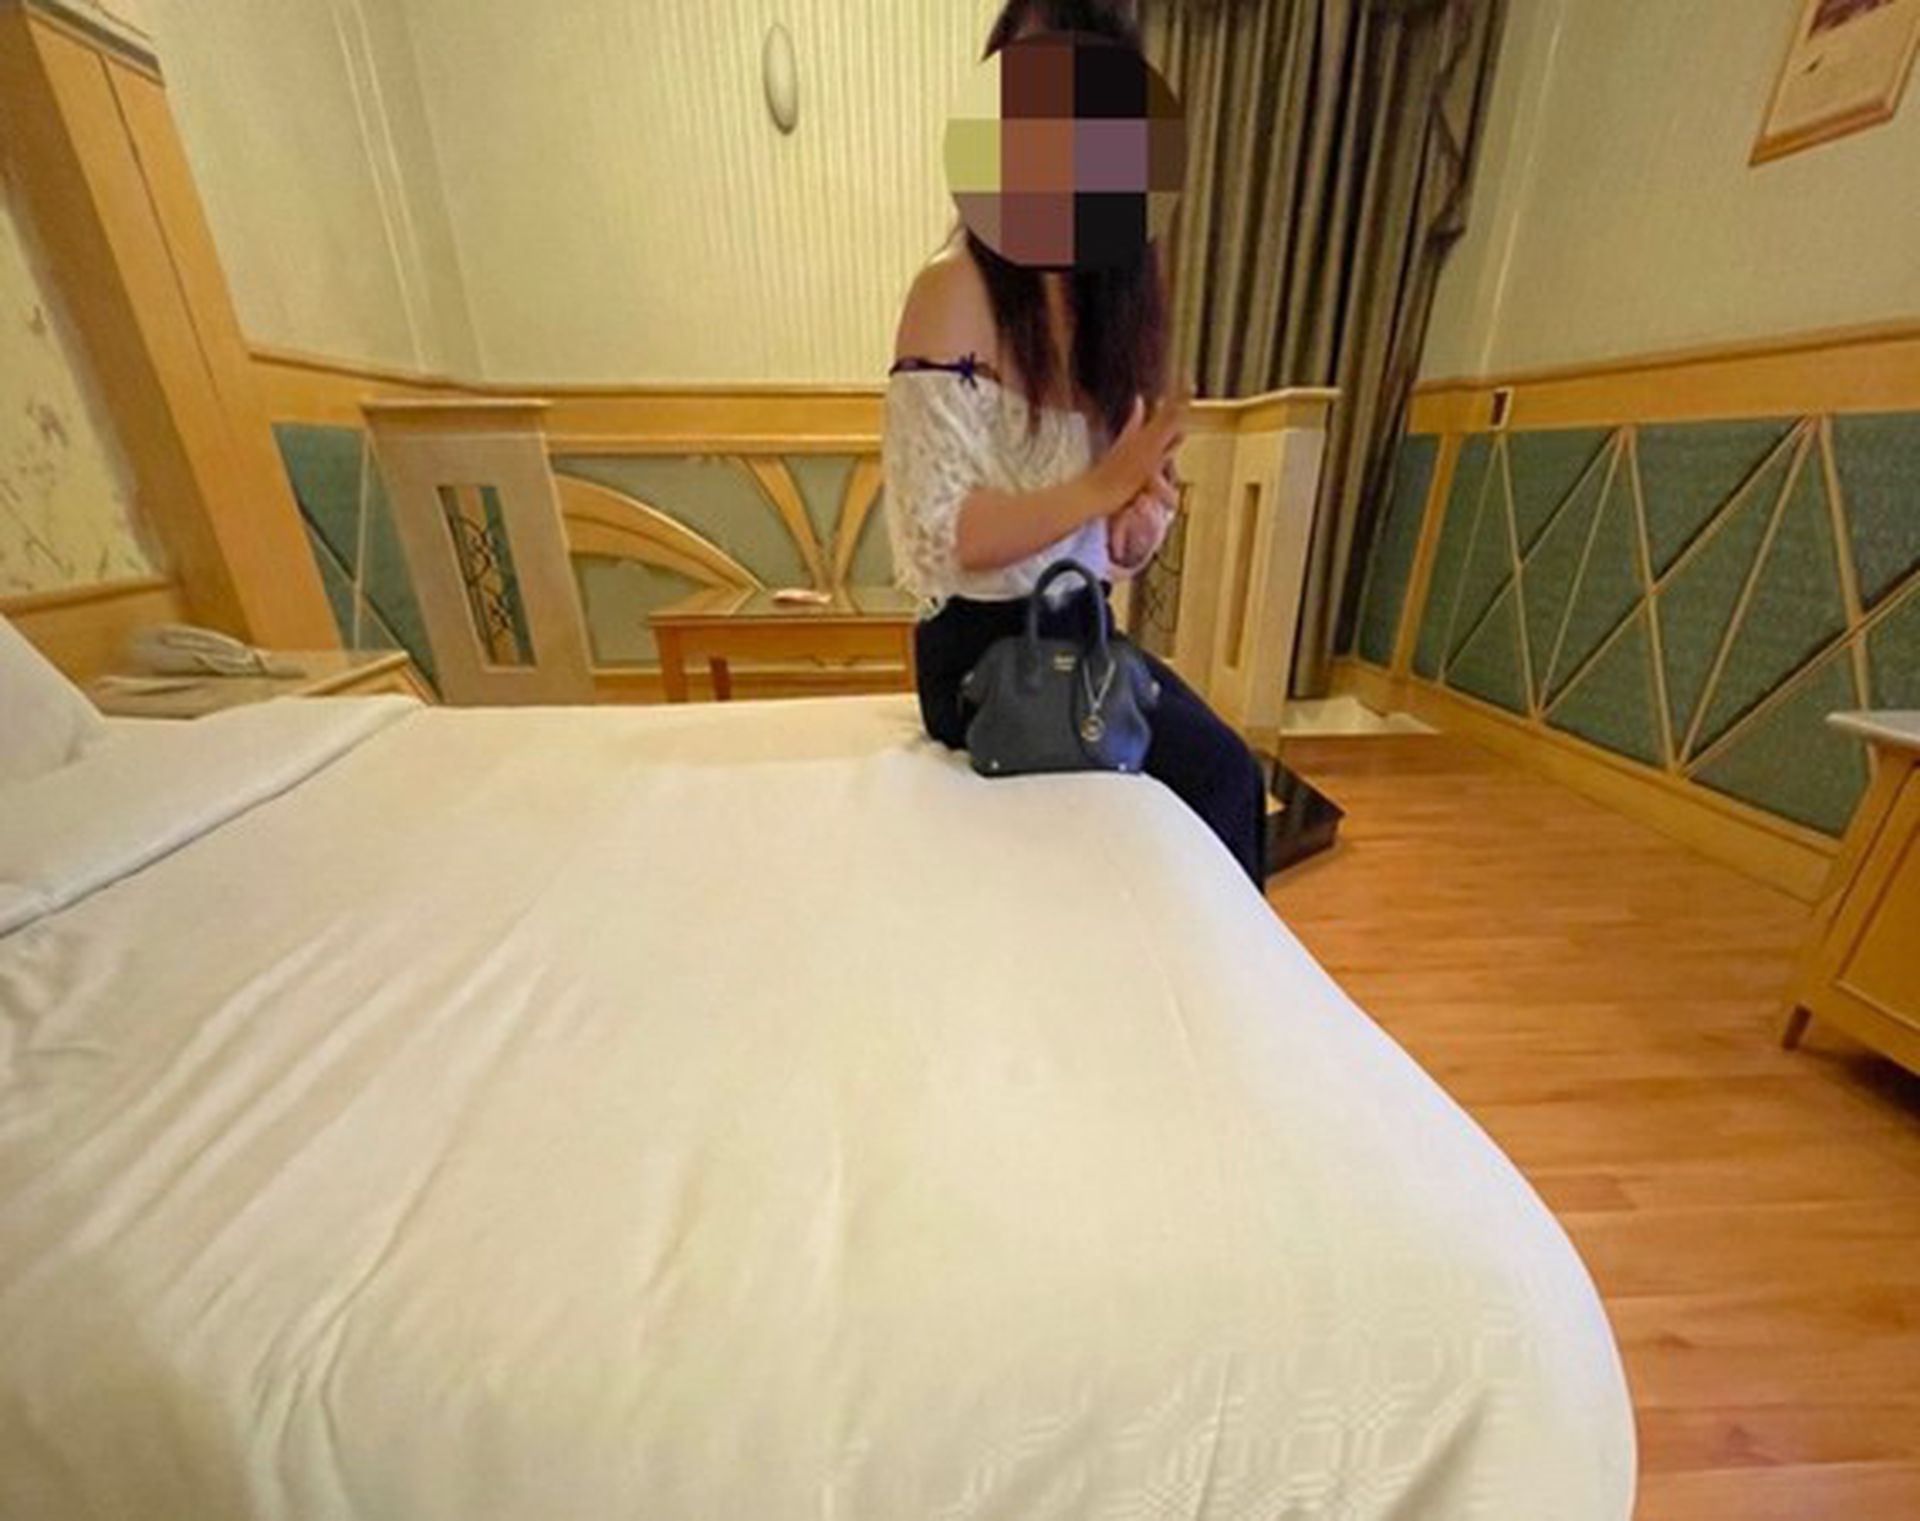 台灣疫情悲歌 28歲人妻失業老公被減薪 為養兒賣淫被捕